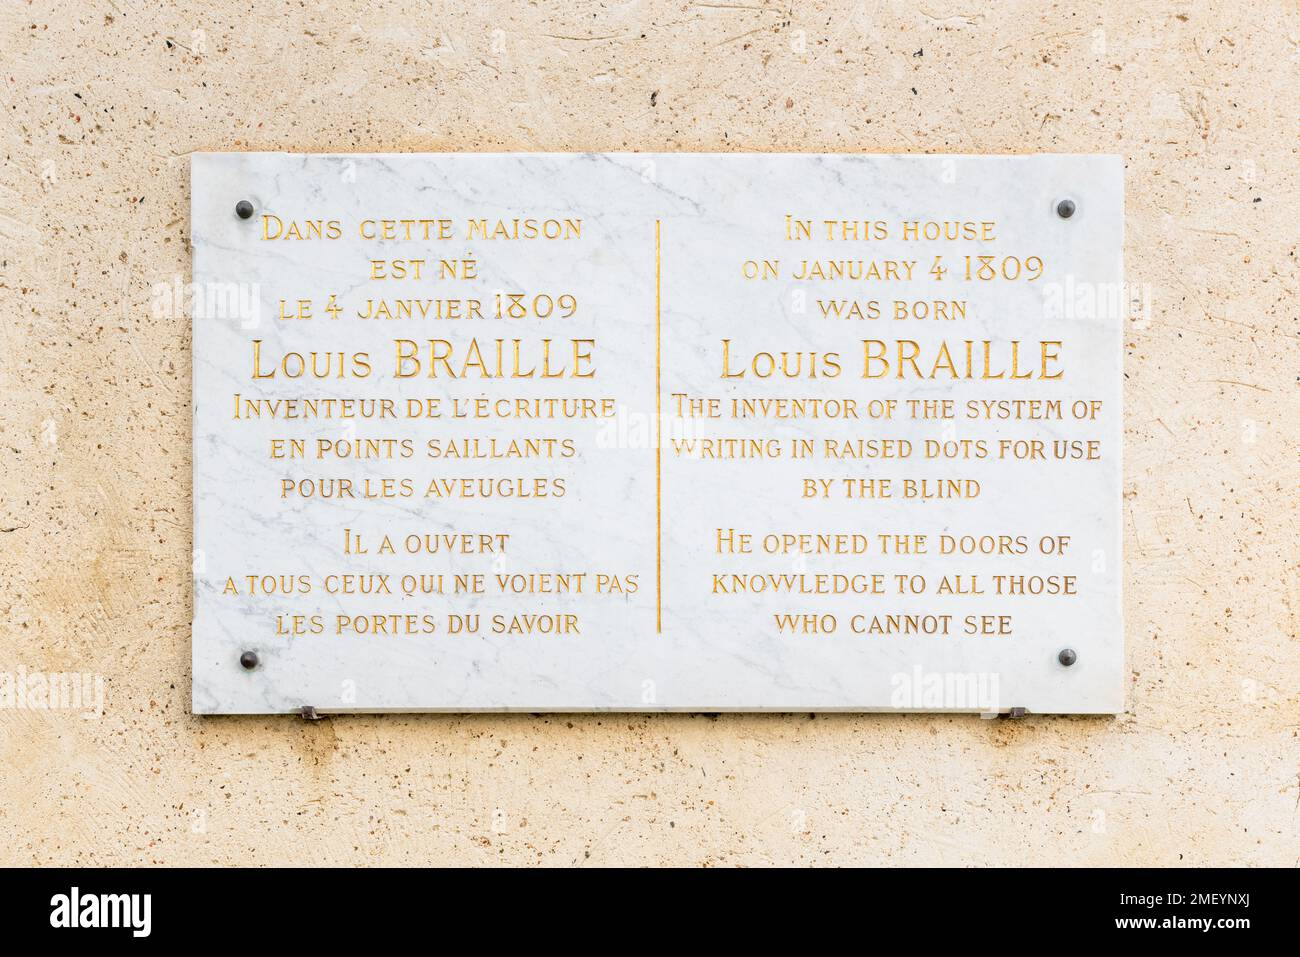 Targa commemorativa alla Casa natale di Louis Braille a Coupvray, Francia. Louis Braille inventò il sistema Braille, destinato ai non vedenti Foto Stock